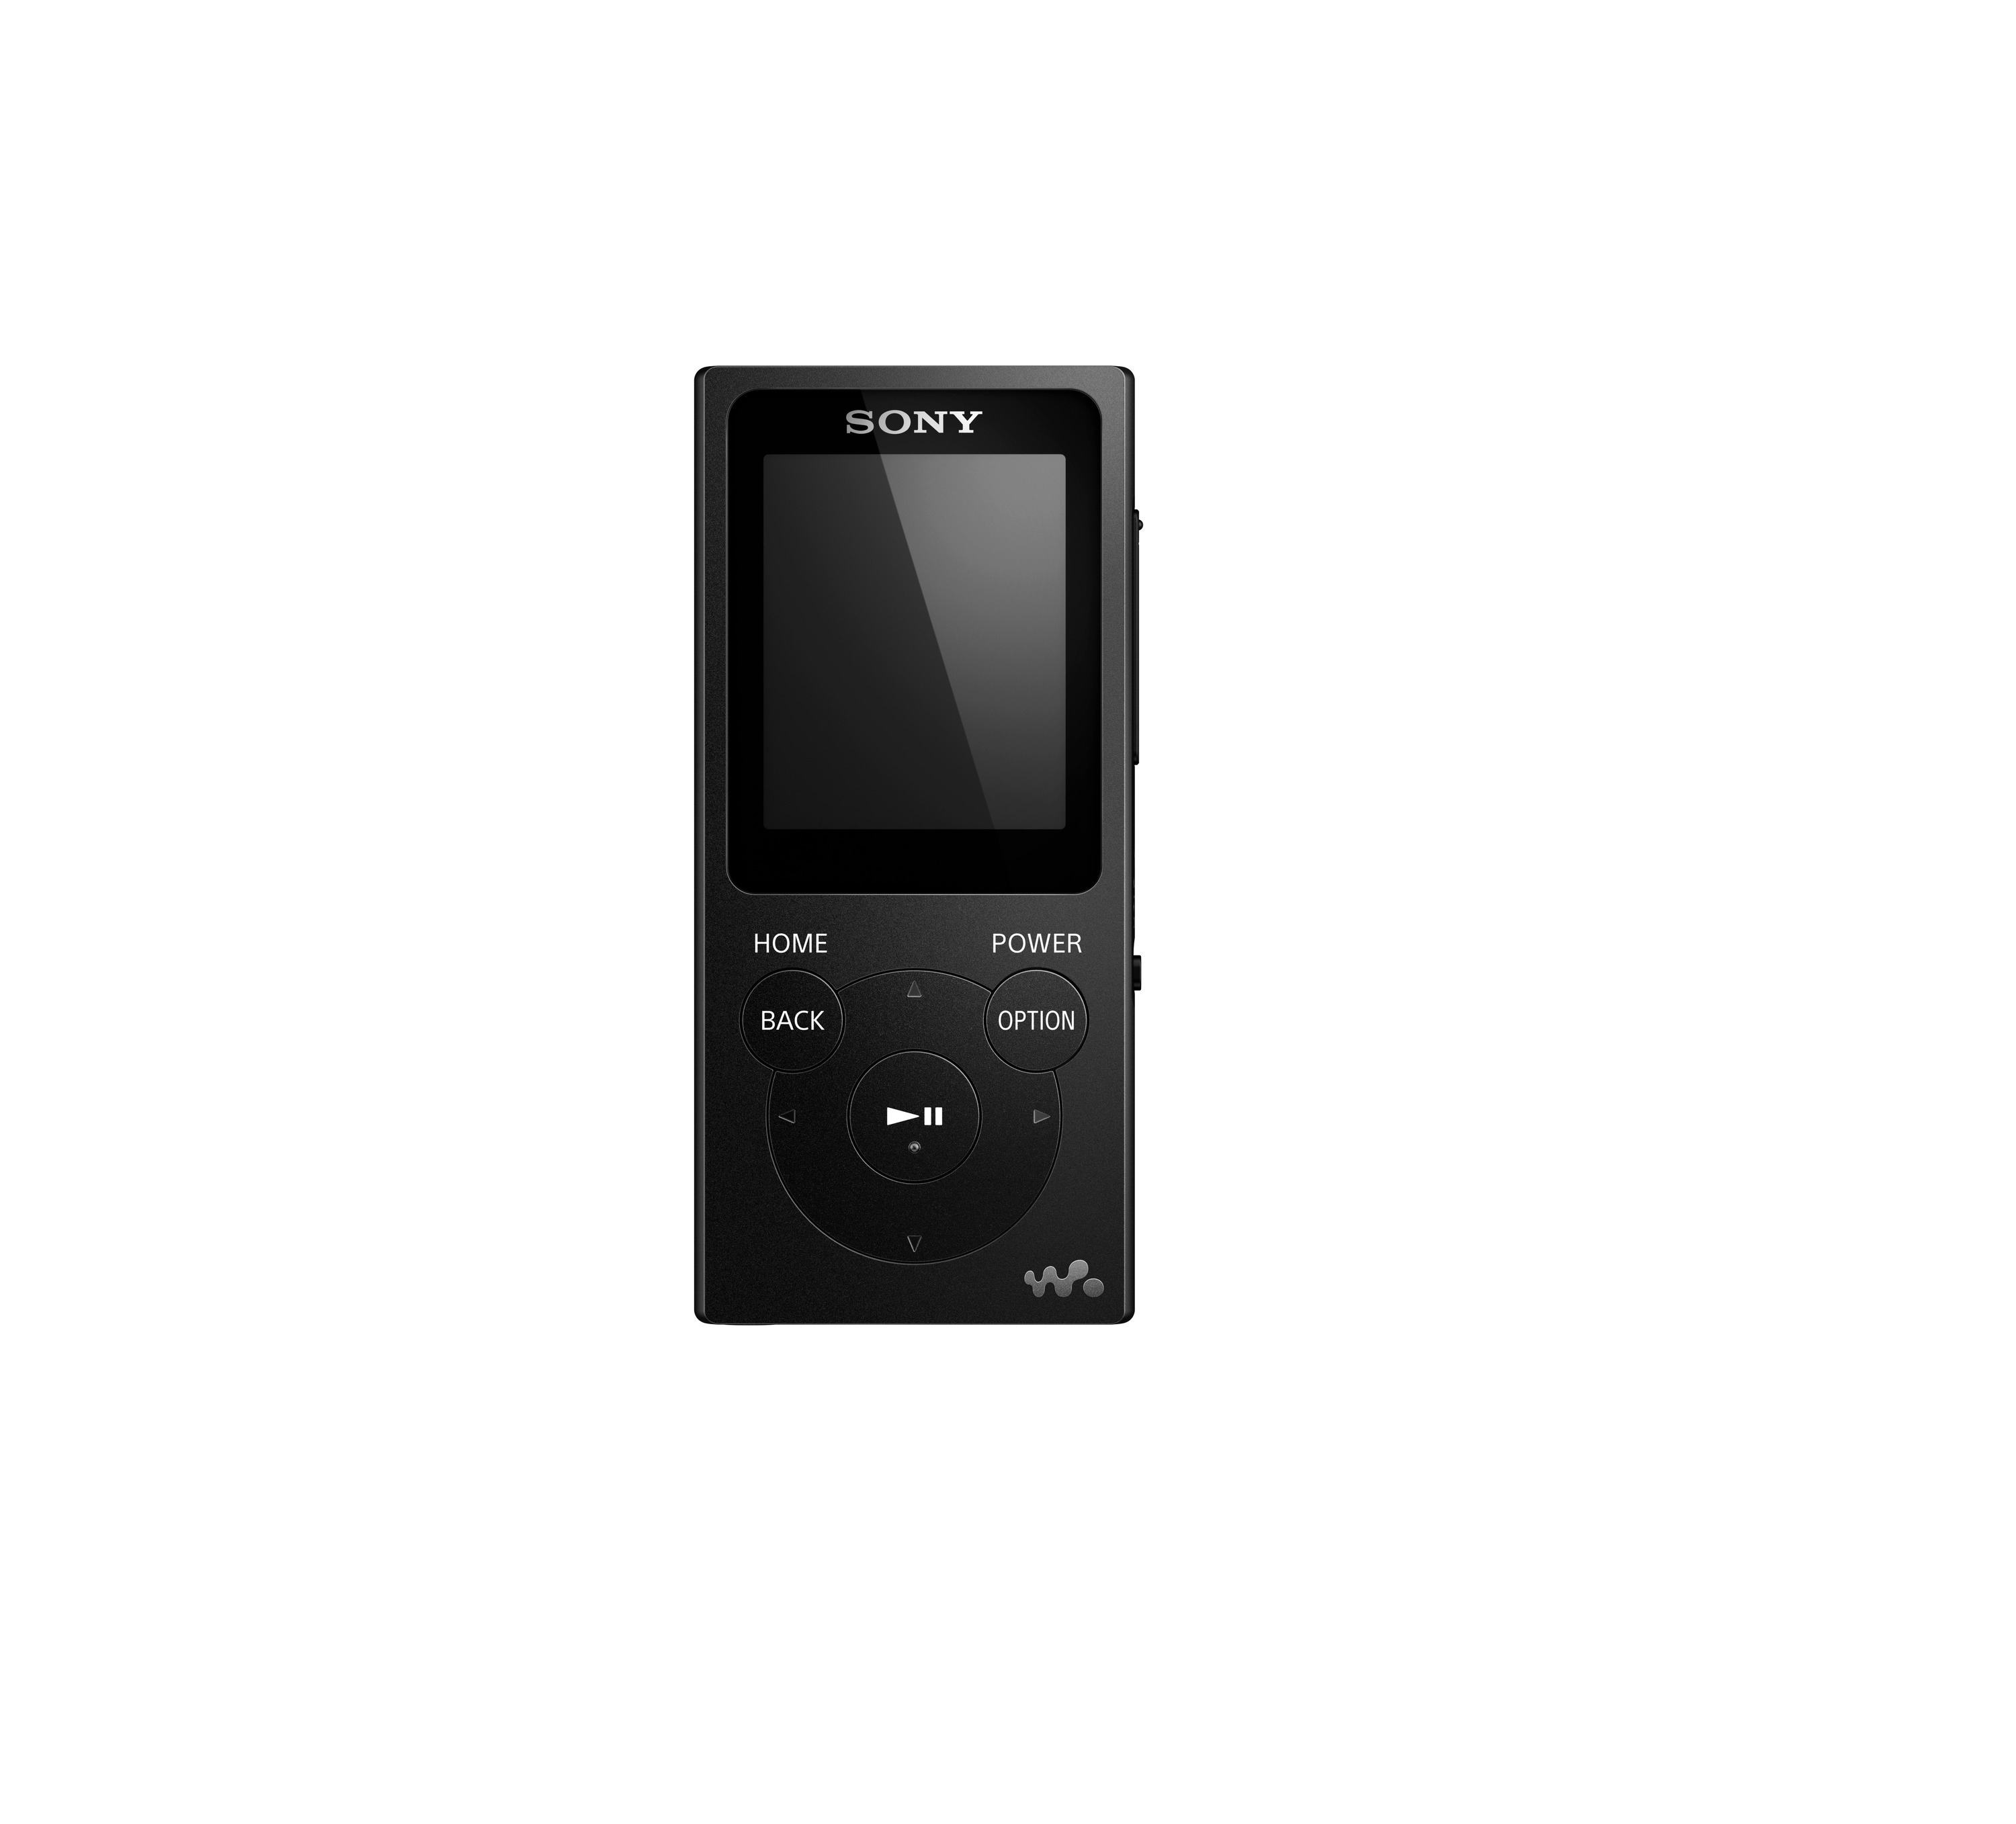 SONY Walkman NW-E394 Mp3-Player GB, Schwarz) (8